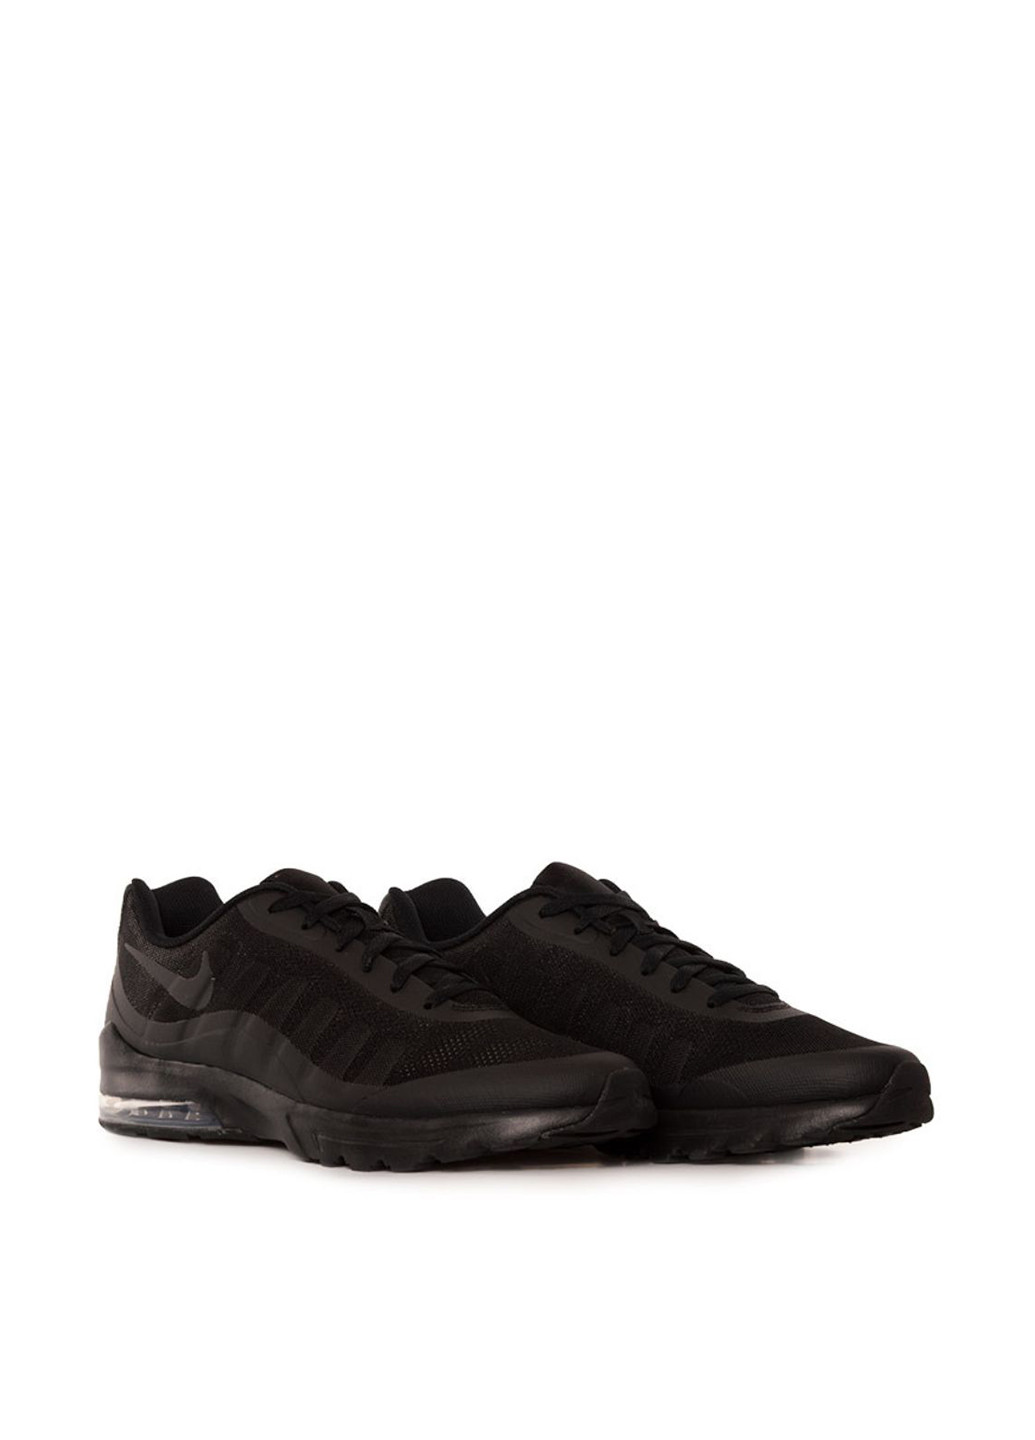 Черные демисезонные кроссовки 749680-001_2024 Nike Air Max Invigor